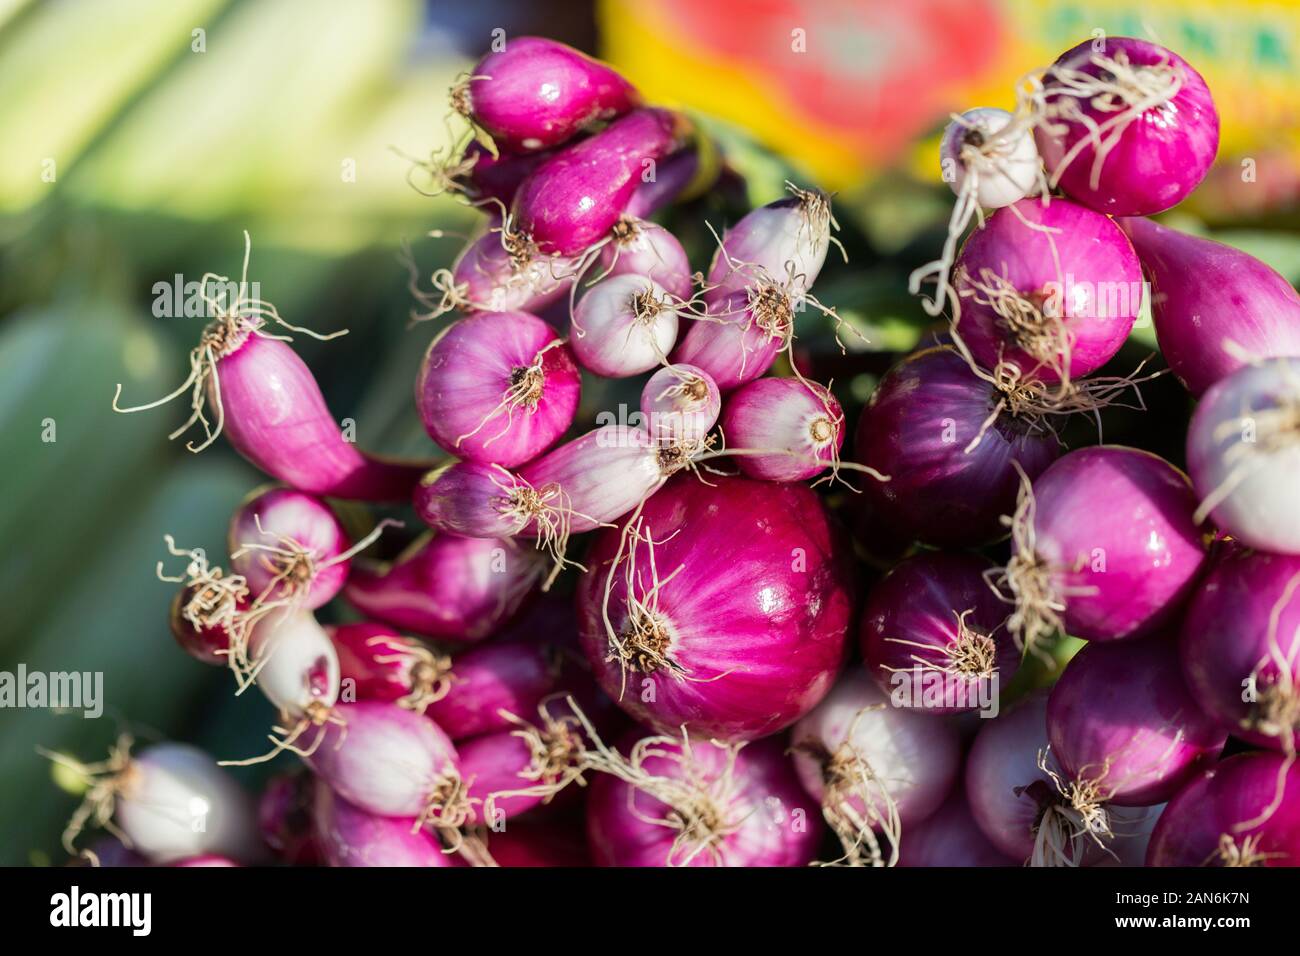 Un bouquet d'oignons rouges (gros plan). En vente sur un marché agricole dans une petite ville appelée Praid (Roumanie). Légumes frais et mûrs. Alimentation saine et biologique. Banque D'Images